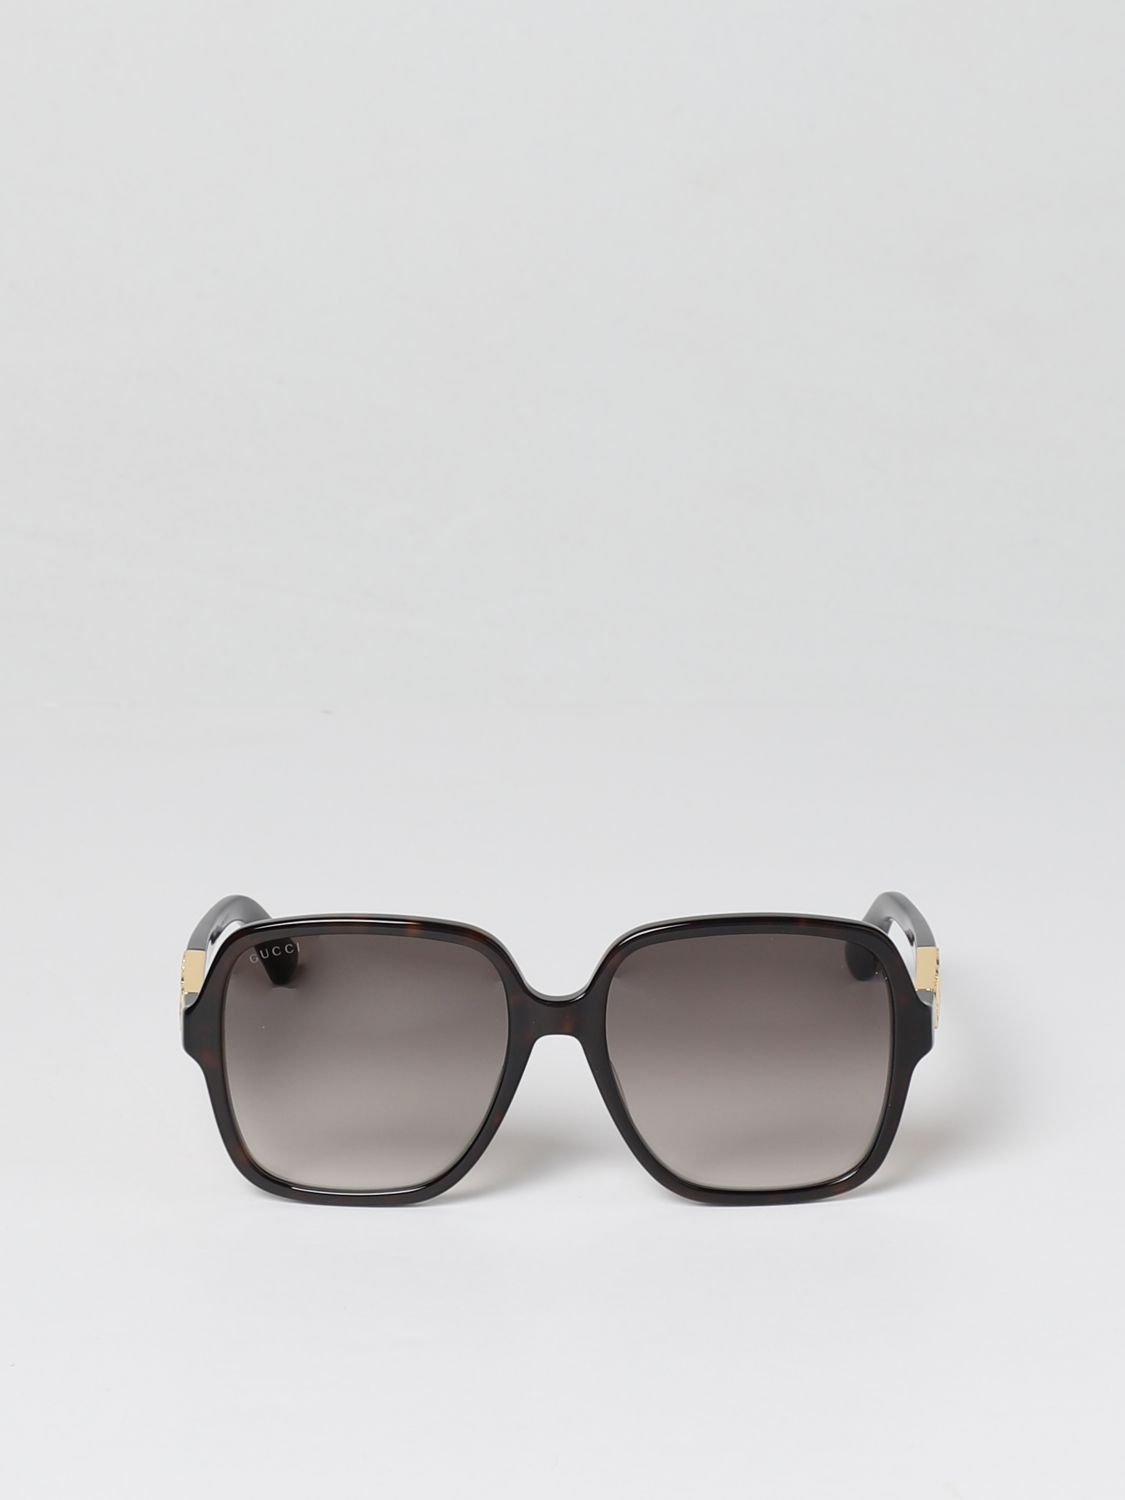 Benodigdheden motief in het midden van niets GUCCI: sunglasses for woman - Brown | Gucci sunglasses GG1189S online on  GIGLIO.COM